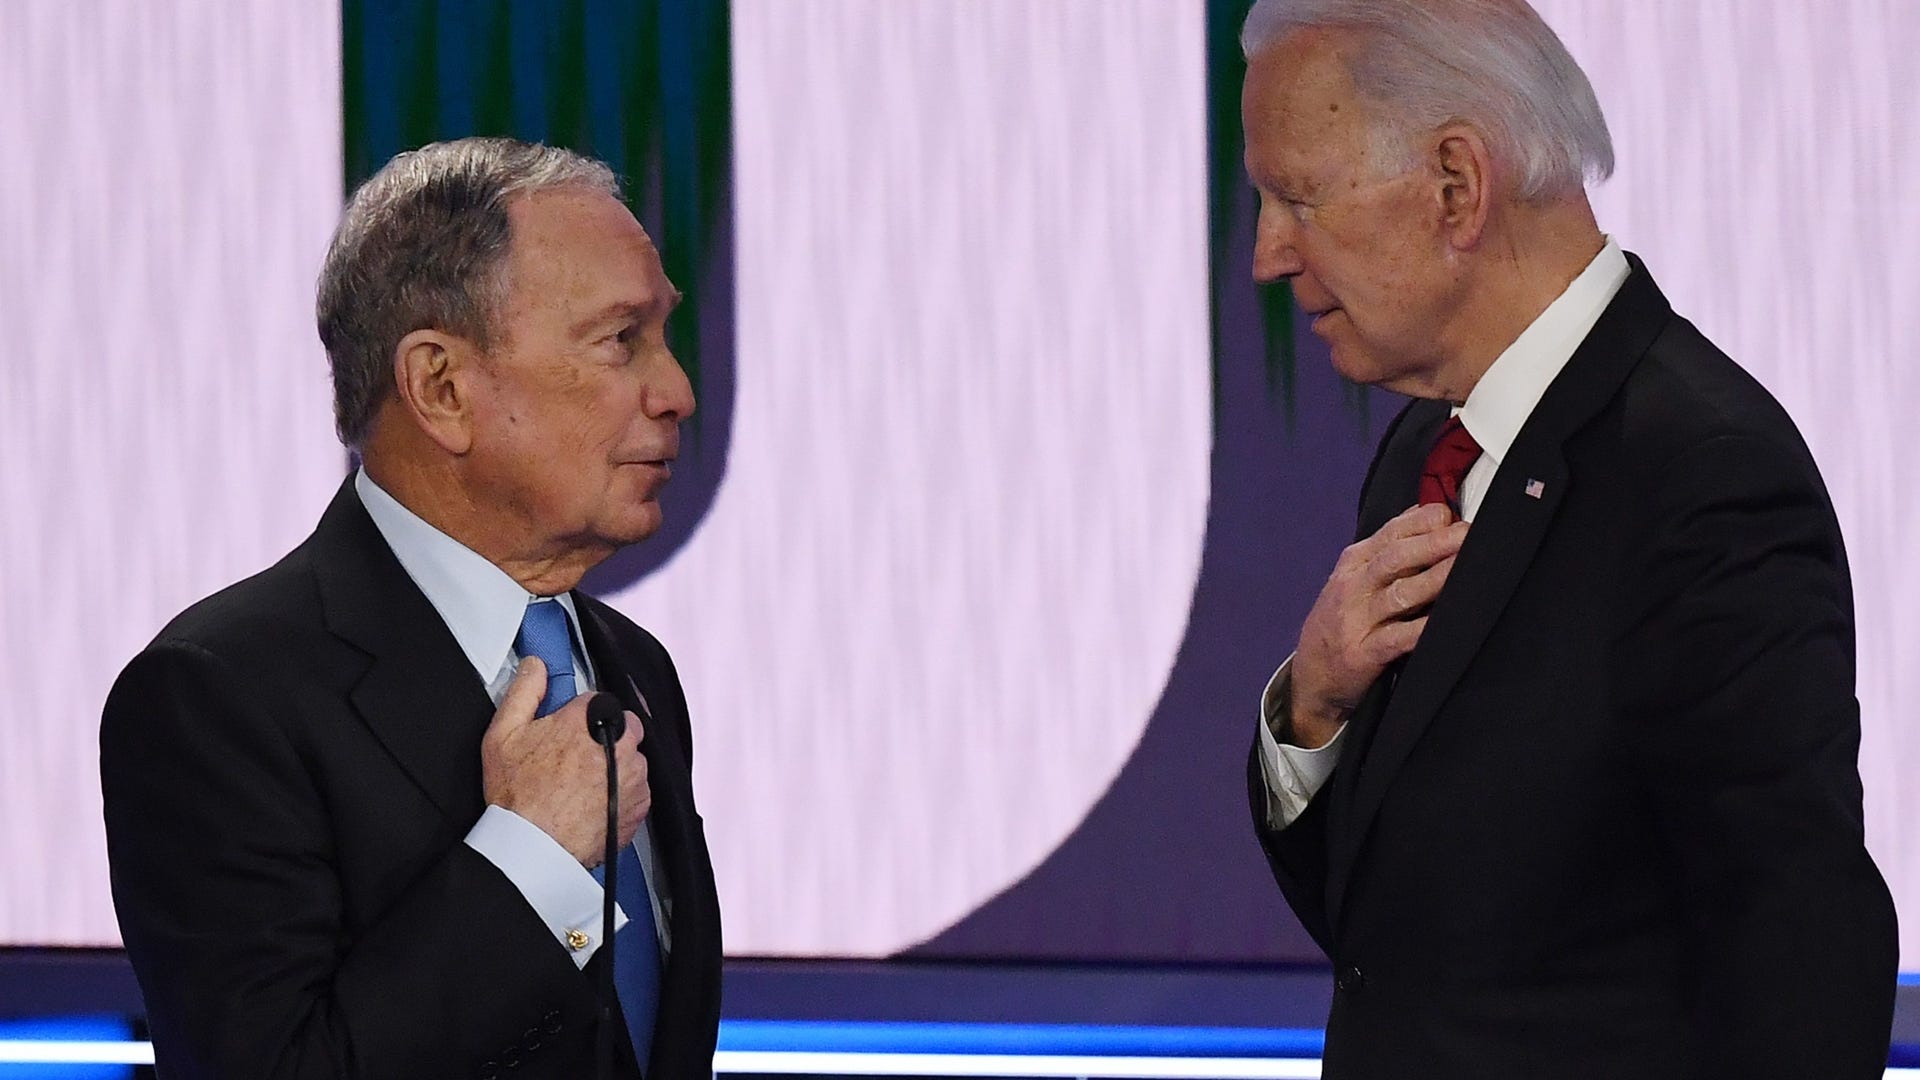 ​Michael Bloomberg and Joe Biden